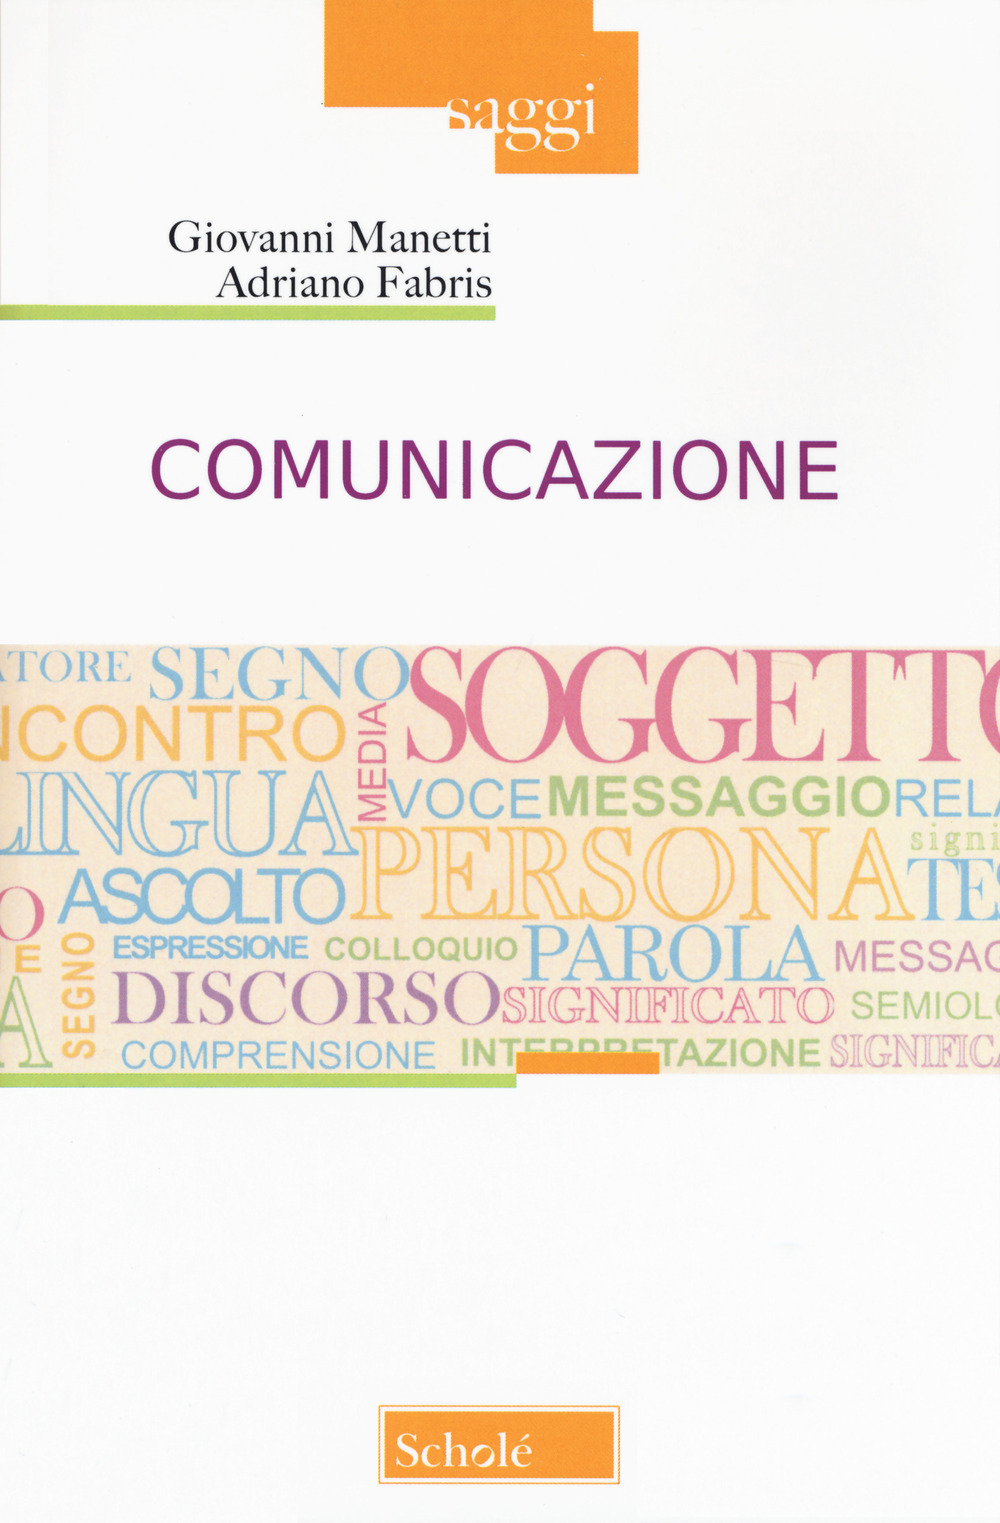 Libri Adriano Fabris / Giovanni Manetti - Comunicazione NUOVO SIGILLATO, EDIZIONE DEL 27/11/2019 SUBITO DISPONIBILE